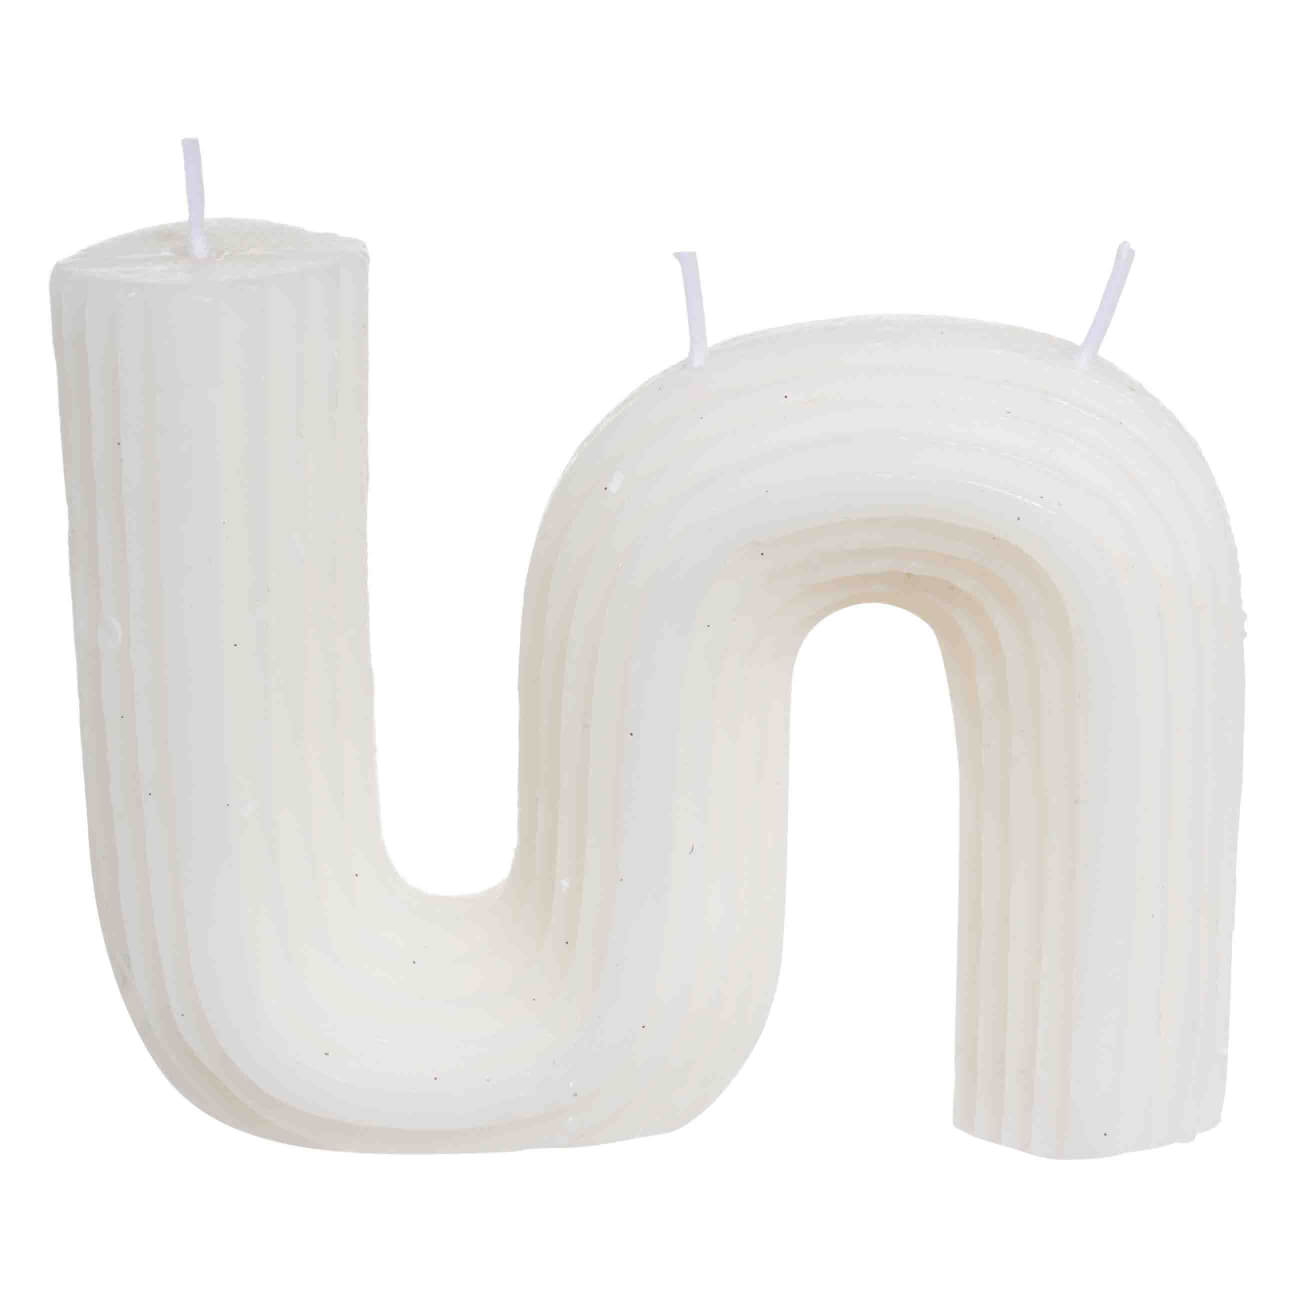 Свеча, 9 см, рифленая, белая, Зигзаг, Ribbed candle свеча классическая 7х10 см белая